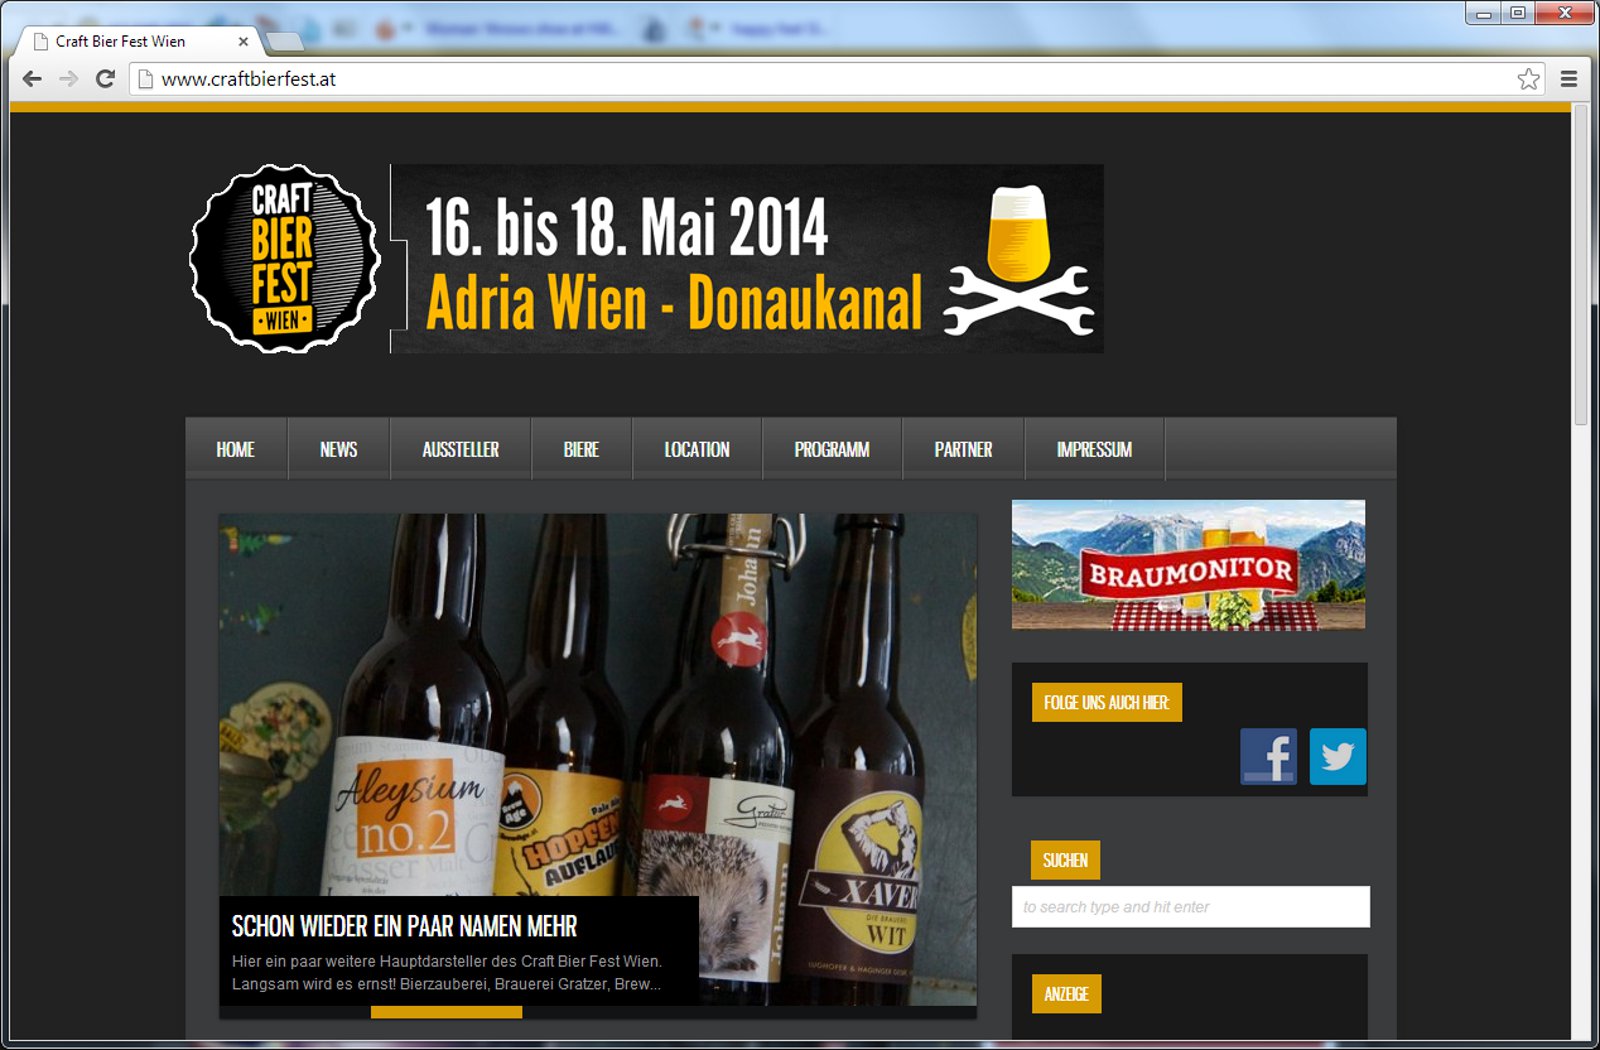 Endlich: Craft Bier Fest Wien – Homepage mit Ausstellern und Bieren online